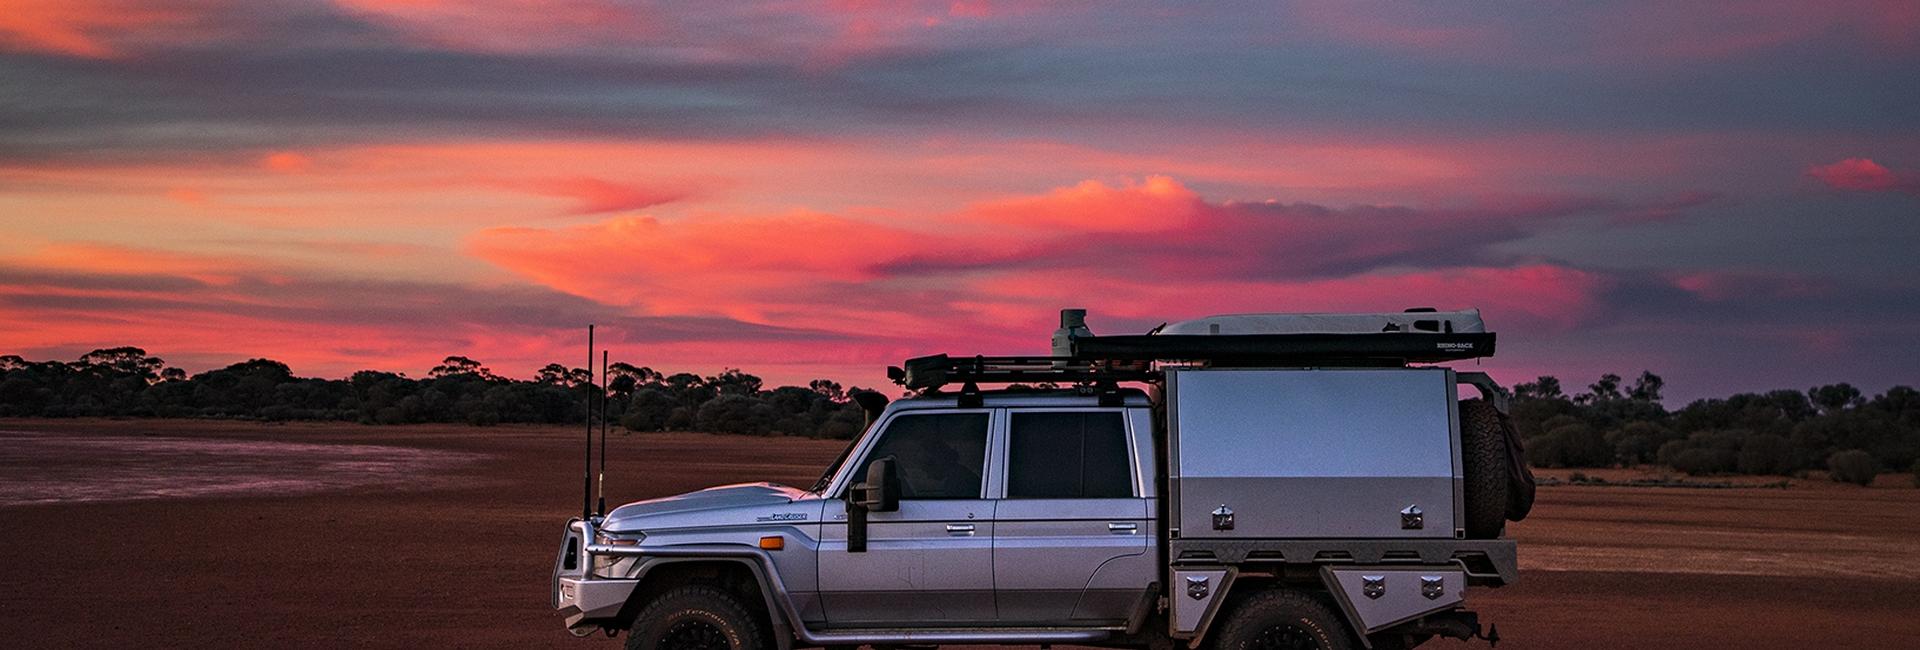 Goldfields sunset jumbotron